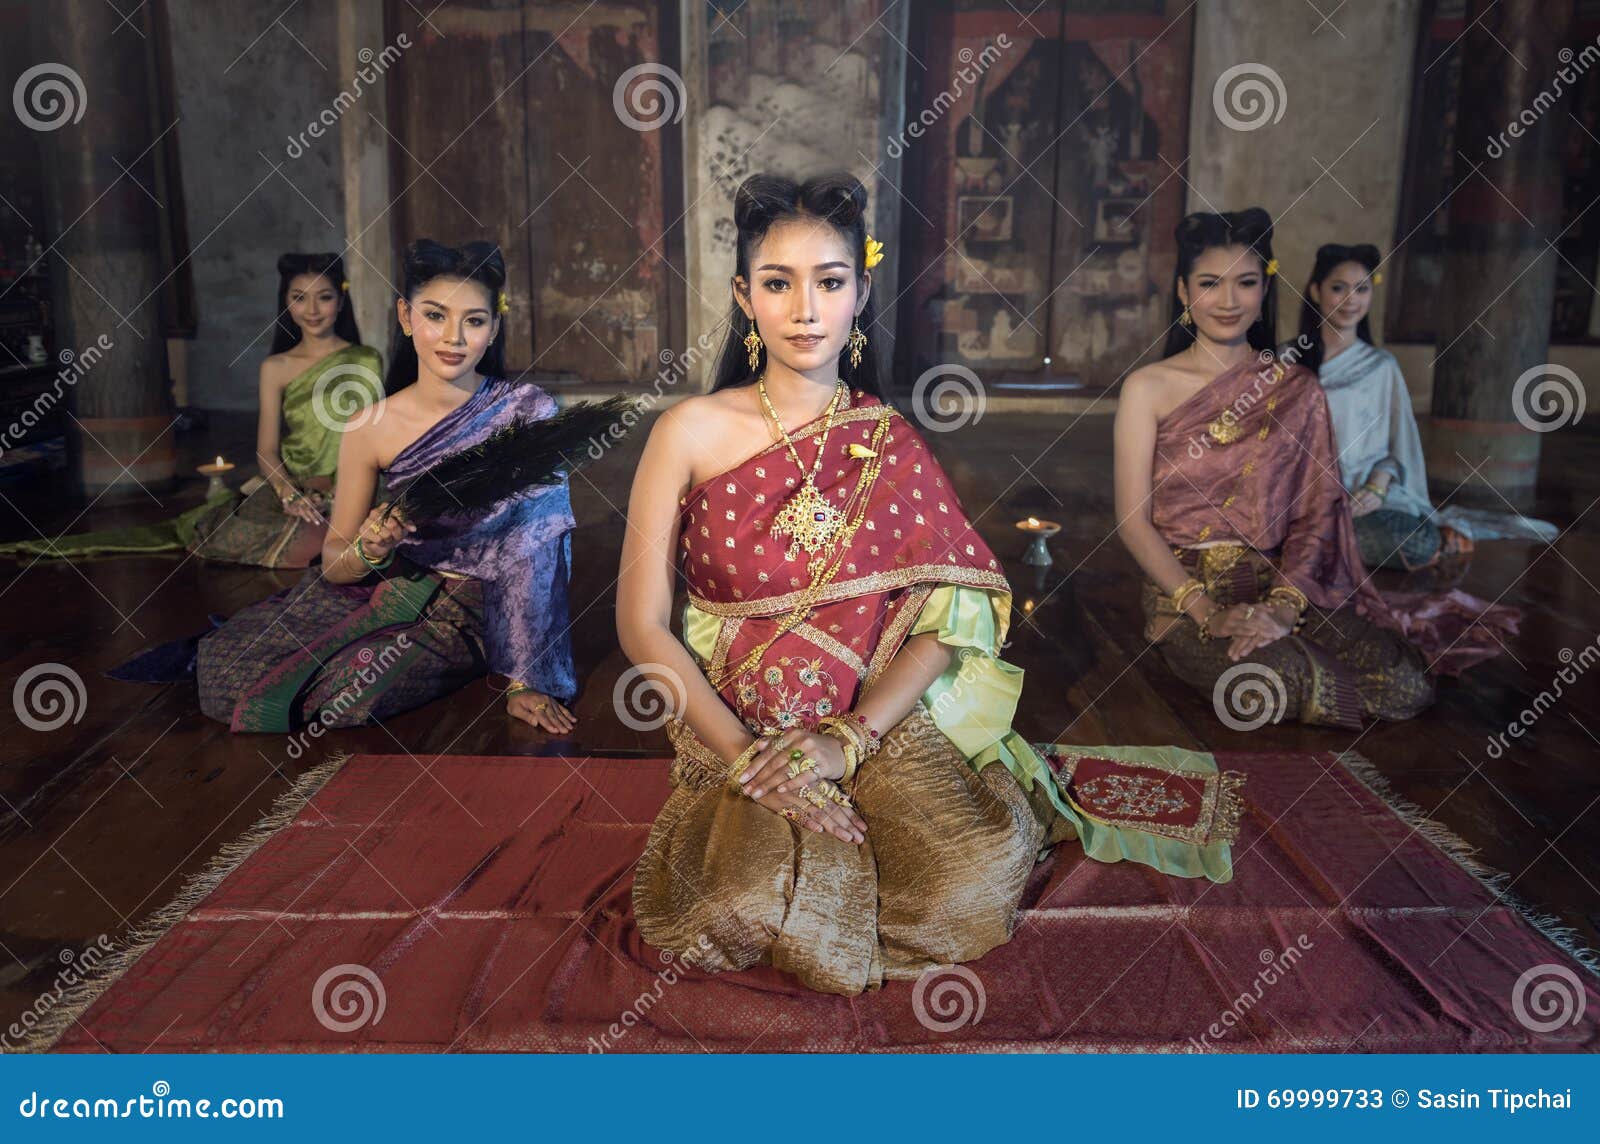 泰国传统服装的美丽的泰国女孩 库存照片. 图片 包括有 舞蹈, 女性, 纵向, 莲花, 伙计, 迷住, 装饰品 - 72235990